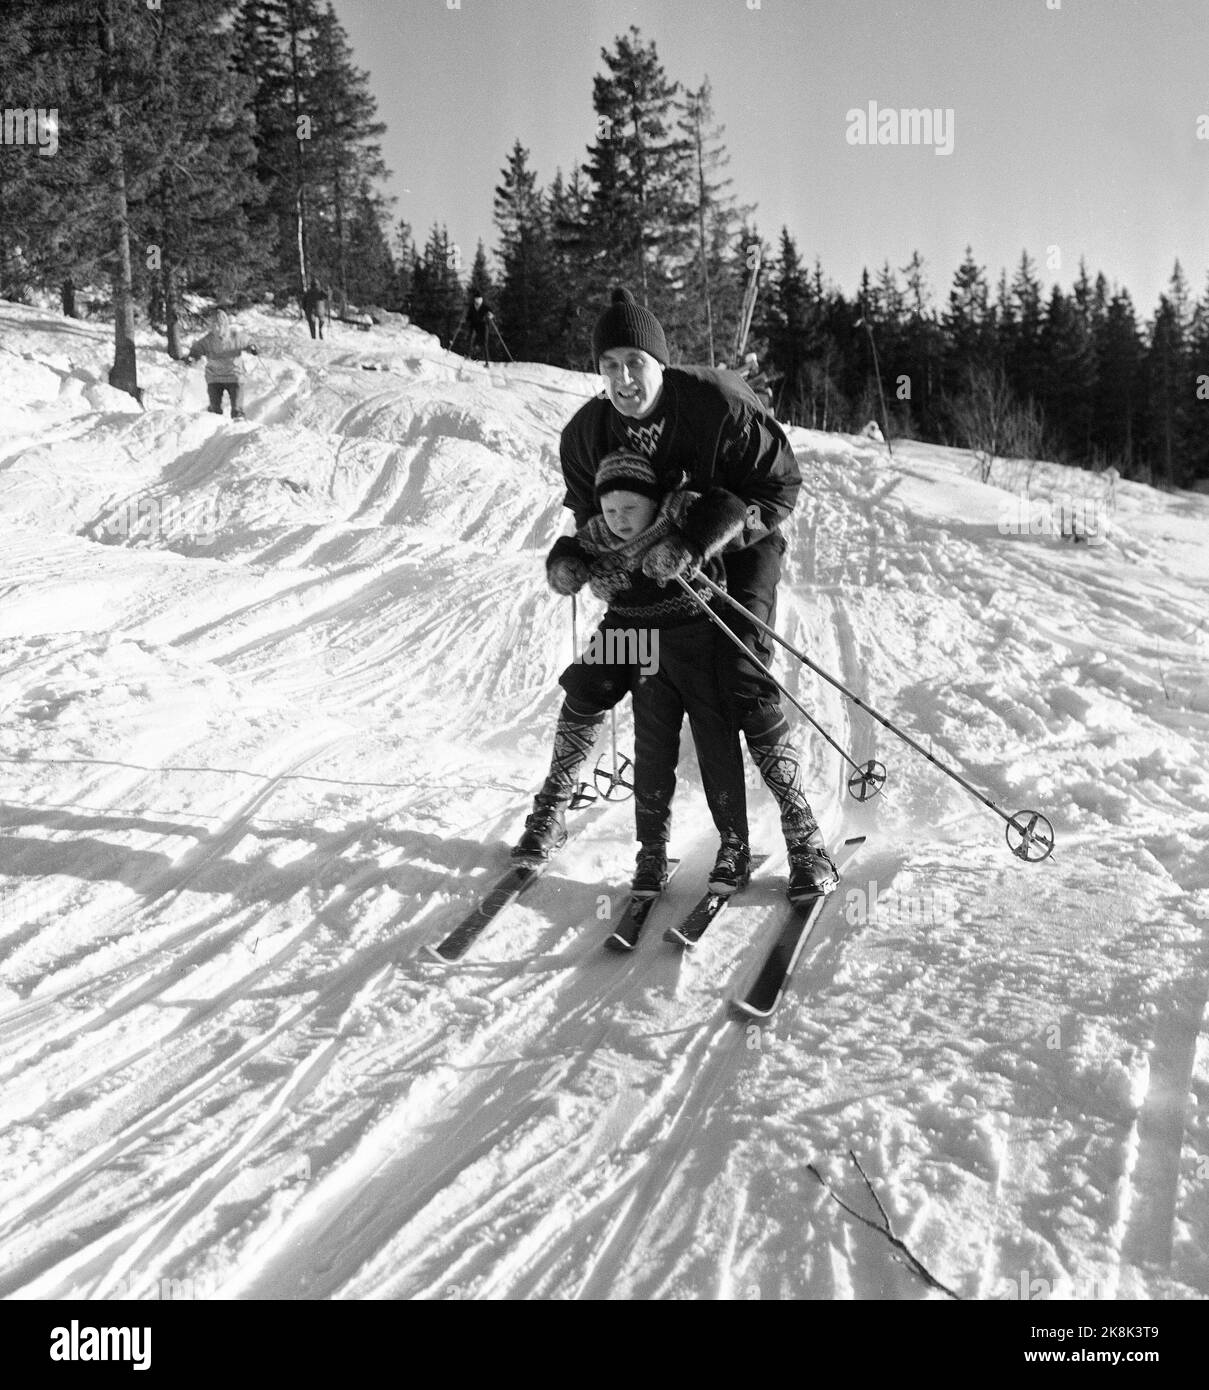 Hakadal 19630113 le nouveau centre de ski de Varingskollen a été ouvert, avec télésiège, sentiers alpins et sentiers de randonnée. Voici un père qui aide son fils dans la descente. Photo: Thorberg / NTB / NTB Banque D'Images